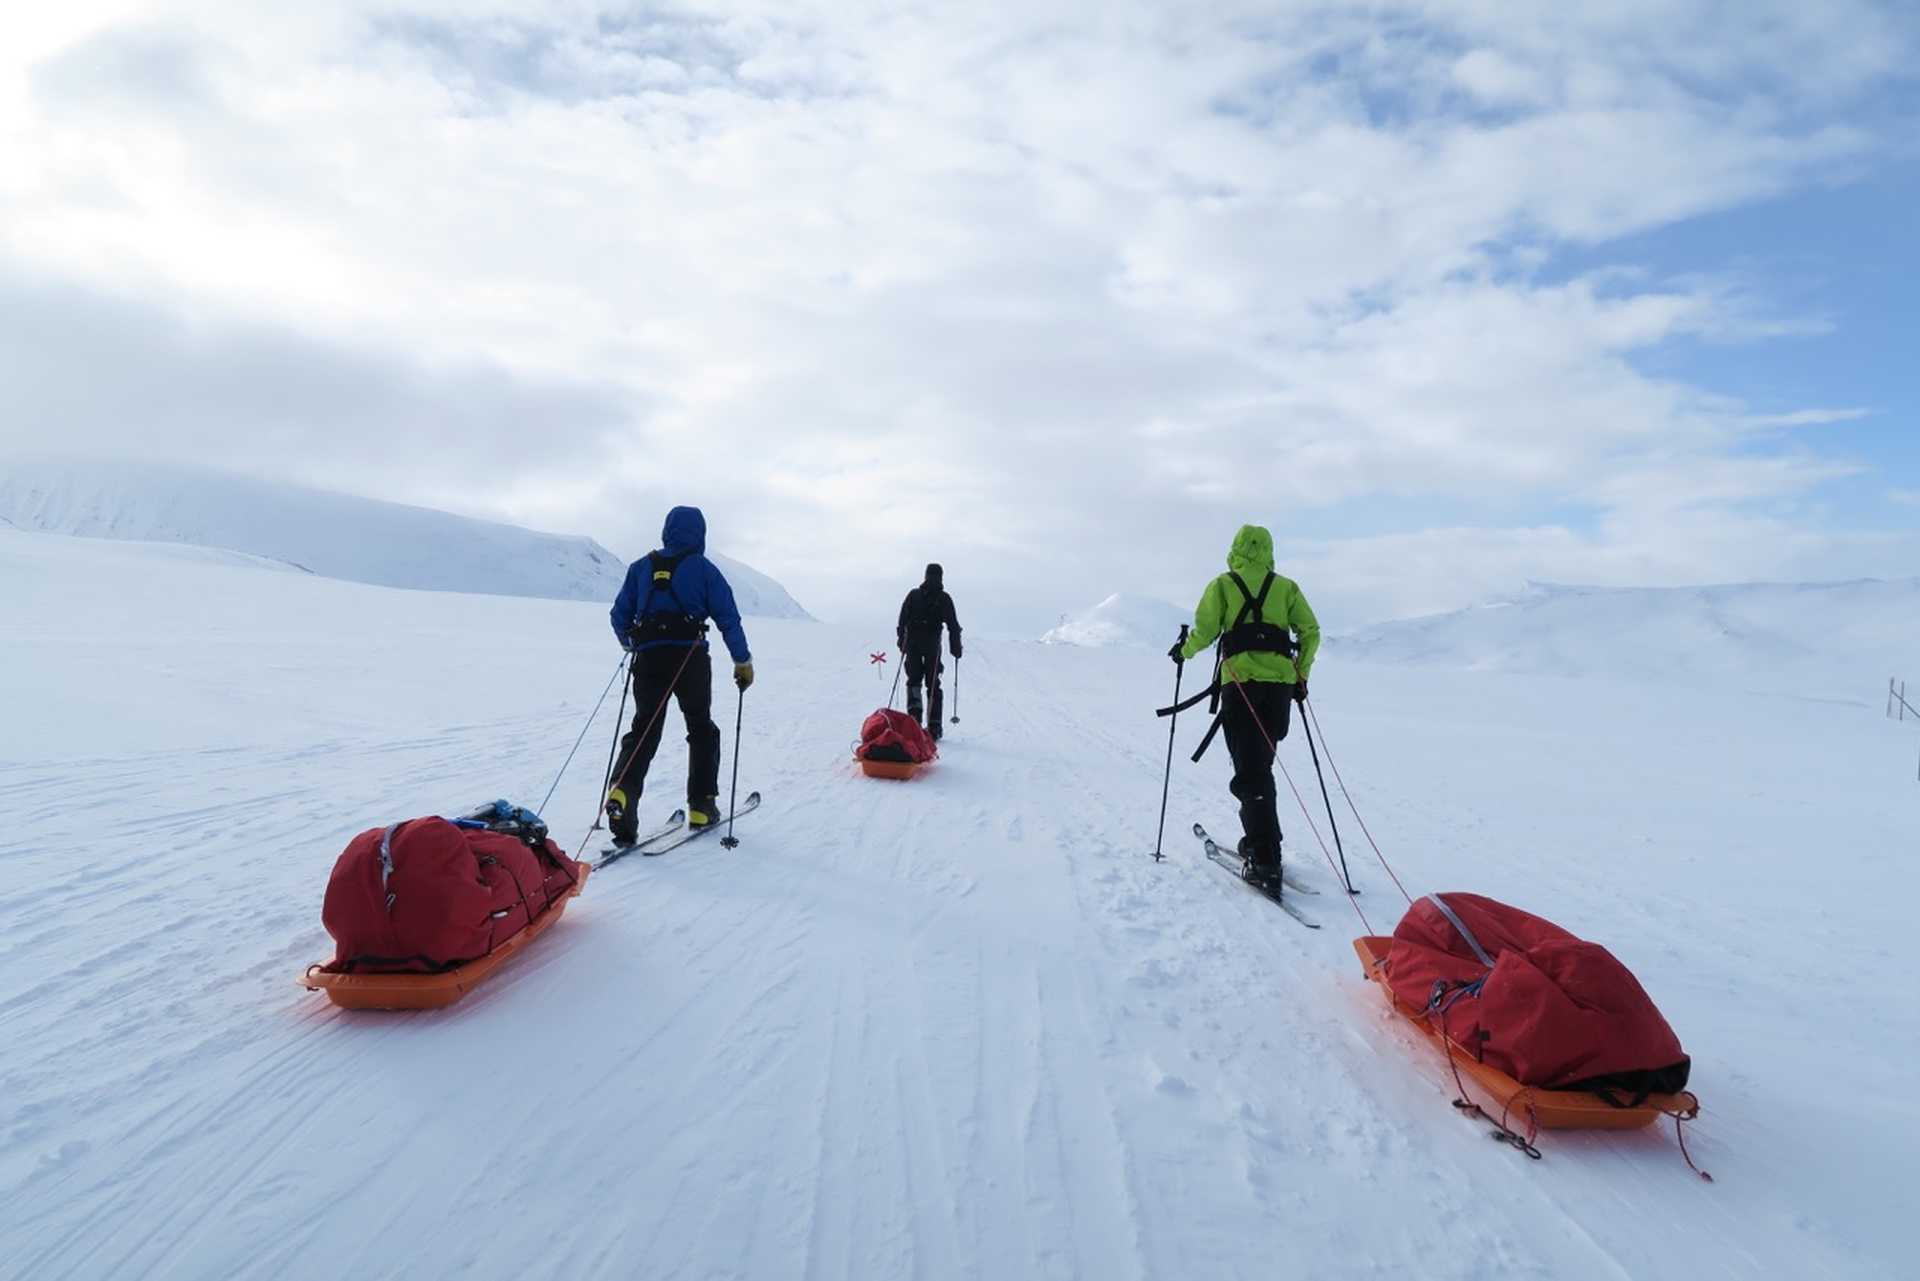 Voyage ski de fond / ski nordique - Suède : itinerance hivernale sur la voie royale